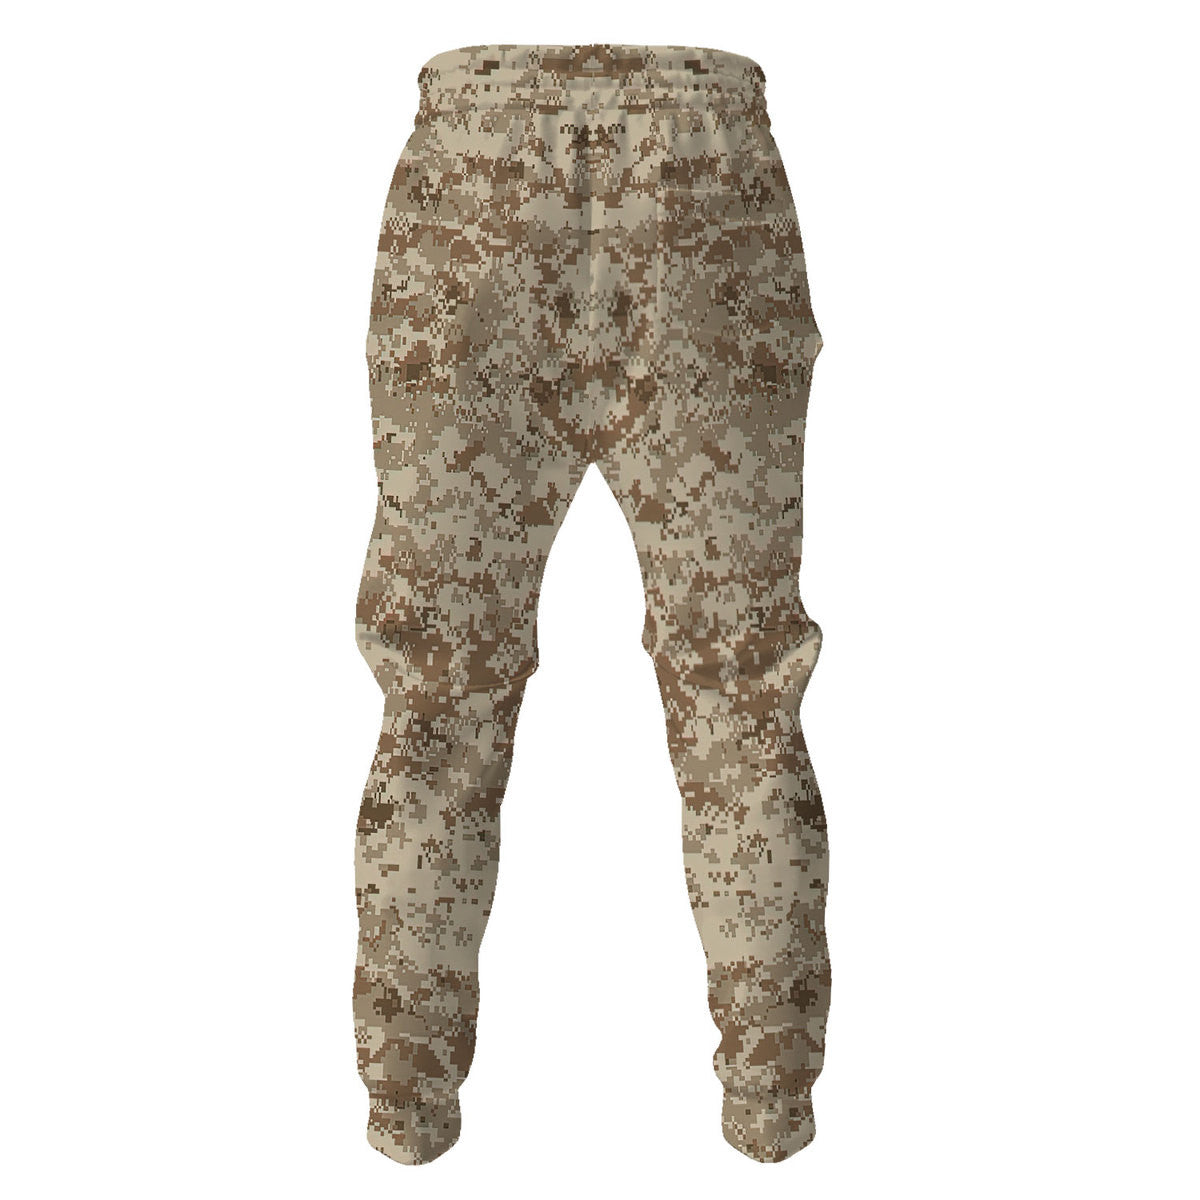 American Navy Working Uniform (NWU) Type II Camo Pants